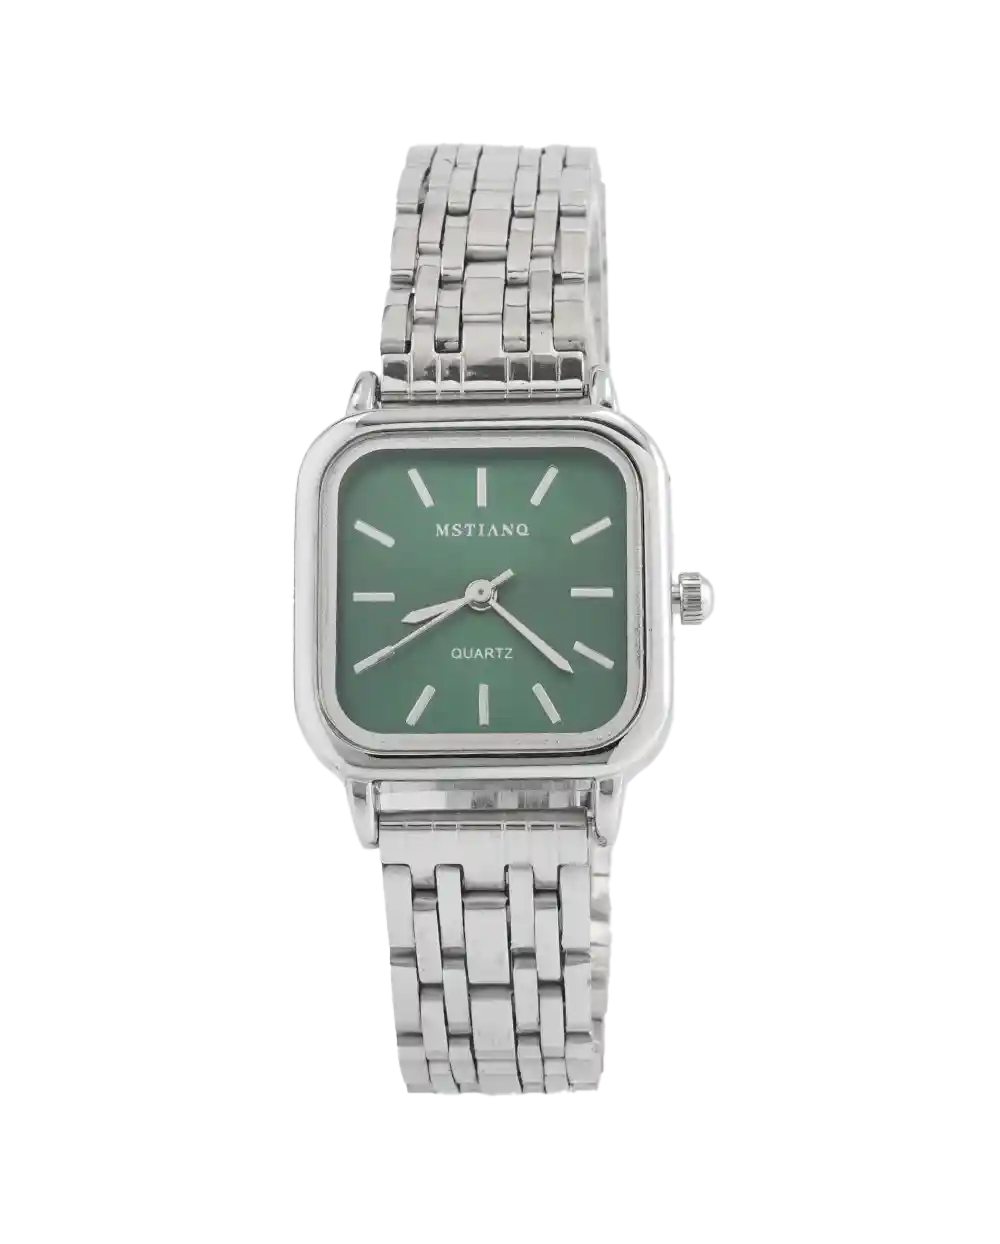 خرید ساعت مچی زنانه MSTIANQ مدل 1809 صفحه ی سبز قیمت 470 هزارتومان به همراه ارسال رایگان و جعبه ی ساعت کادویی | ساعت صفحه سبز دخترانه ظریف